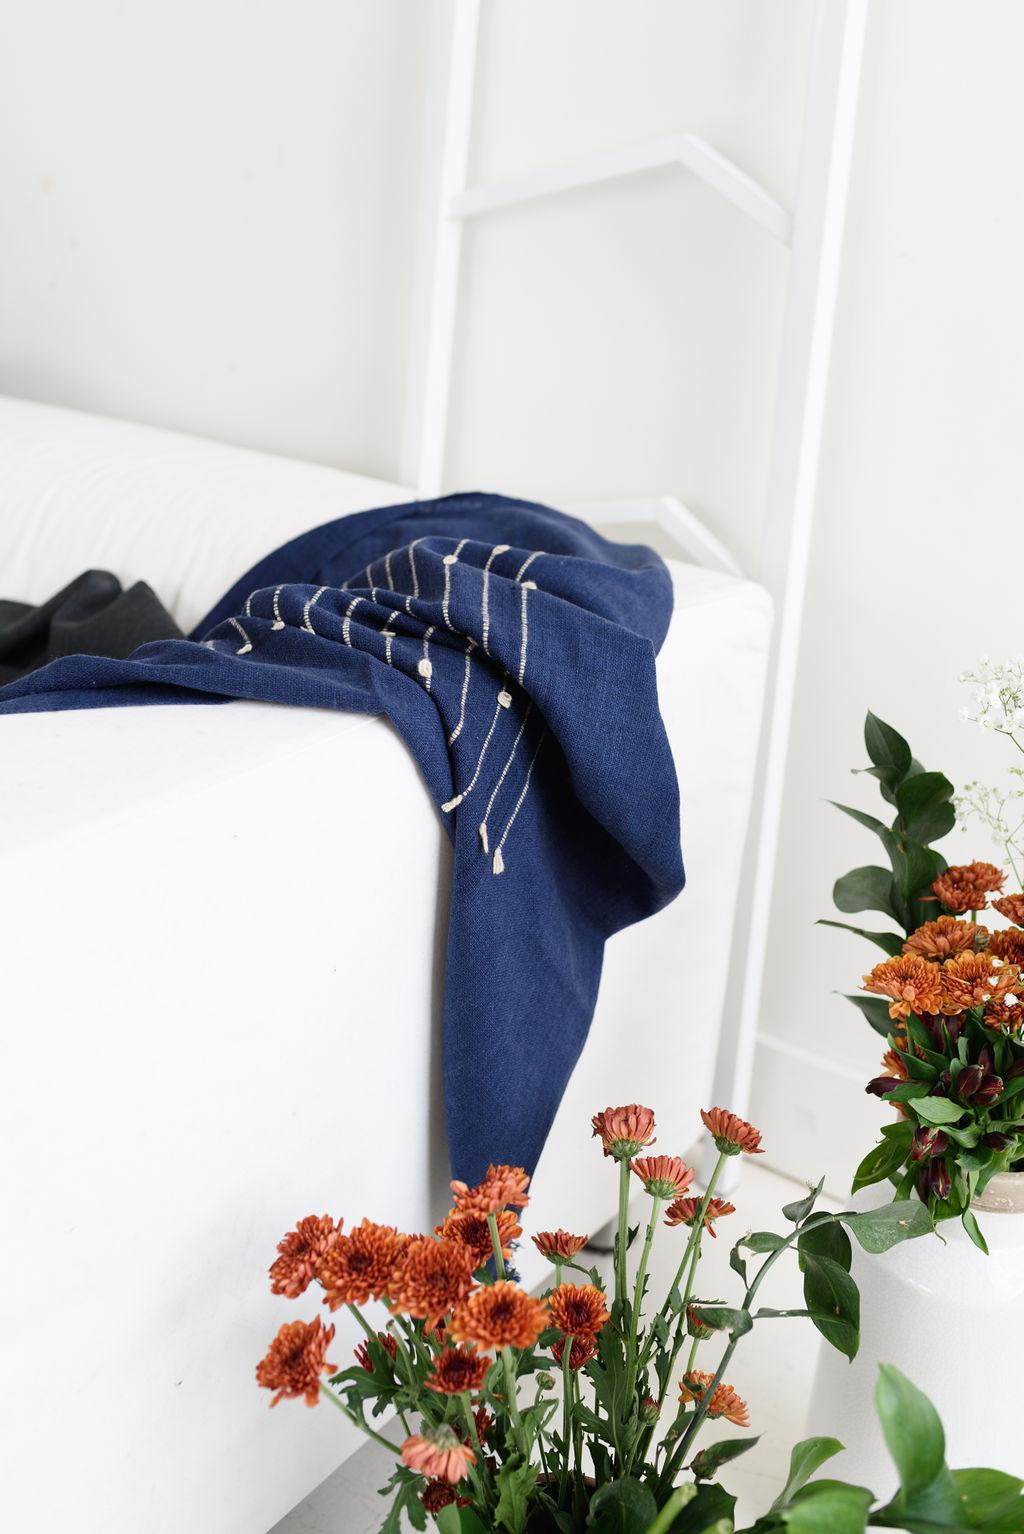 Yarn Rosewood Indigo Handloom Queen Size Bedpsread / Coverlet in Stripes Design